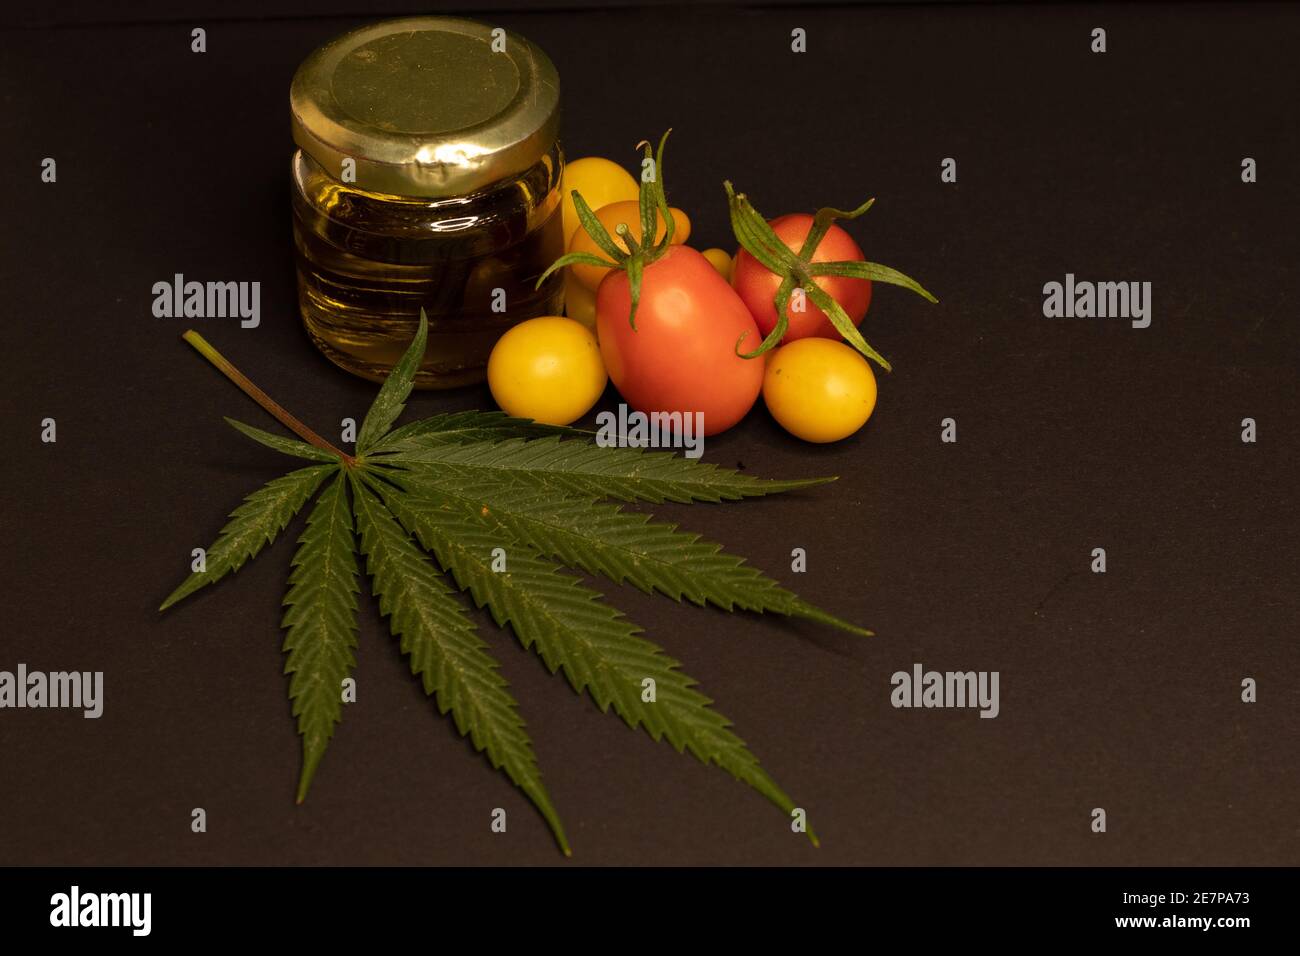 Une feuille de cannabis, un pot rempli d'huile de cbd et quelques tomates cerises sur fond noir. L'image illustre la relation entre l'alimentation et le cannabis. Banque D'Images